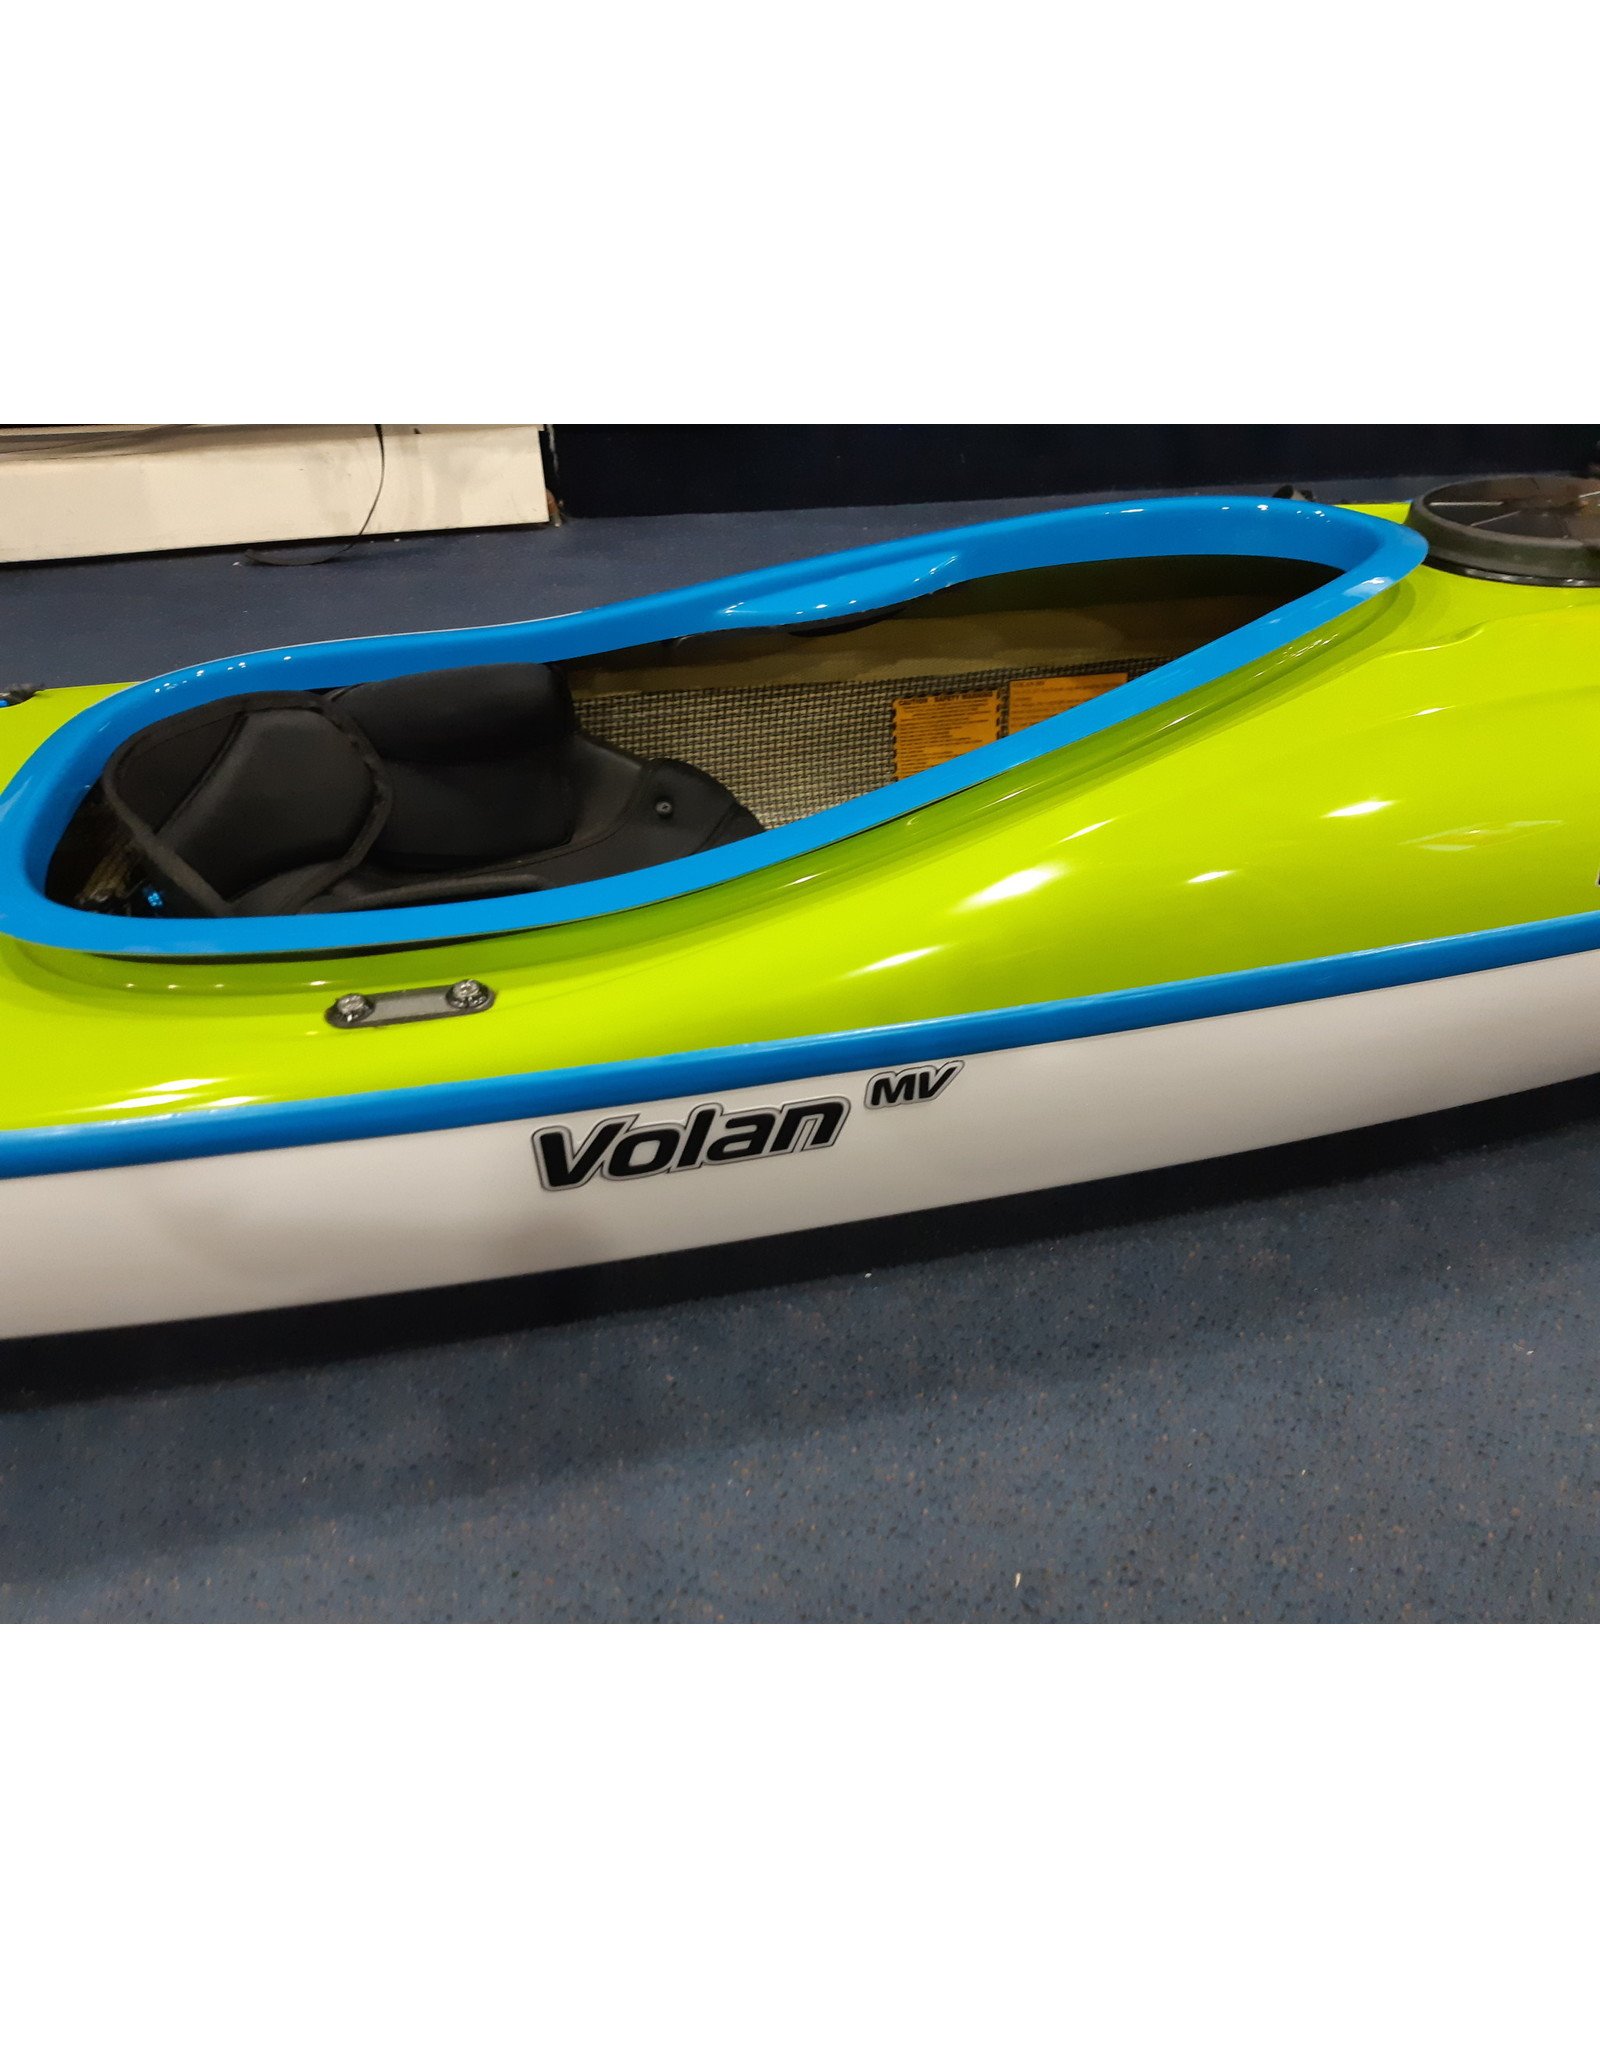 P&H Custom Sea Kayaks P&H kayak Volan MV  Lightweight Kevlar/Carbon with Keel strip Green/White/Turquoise